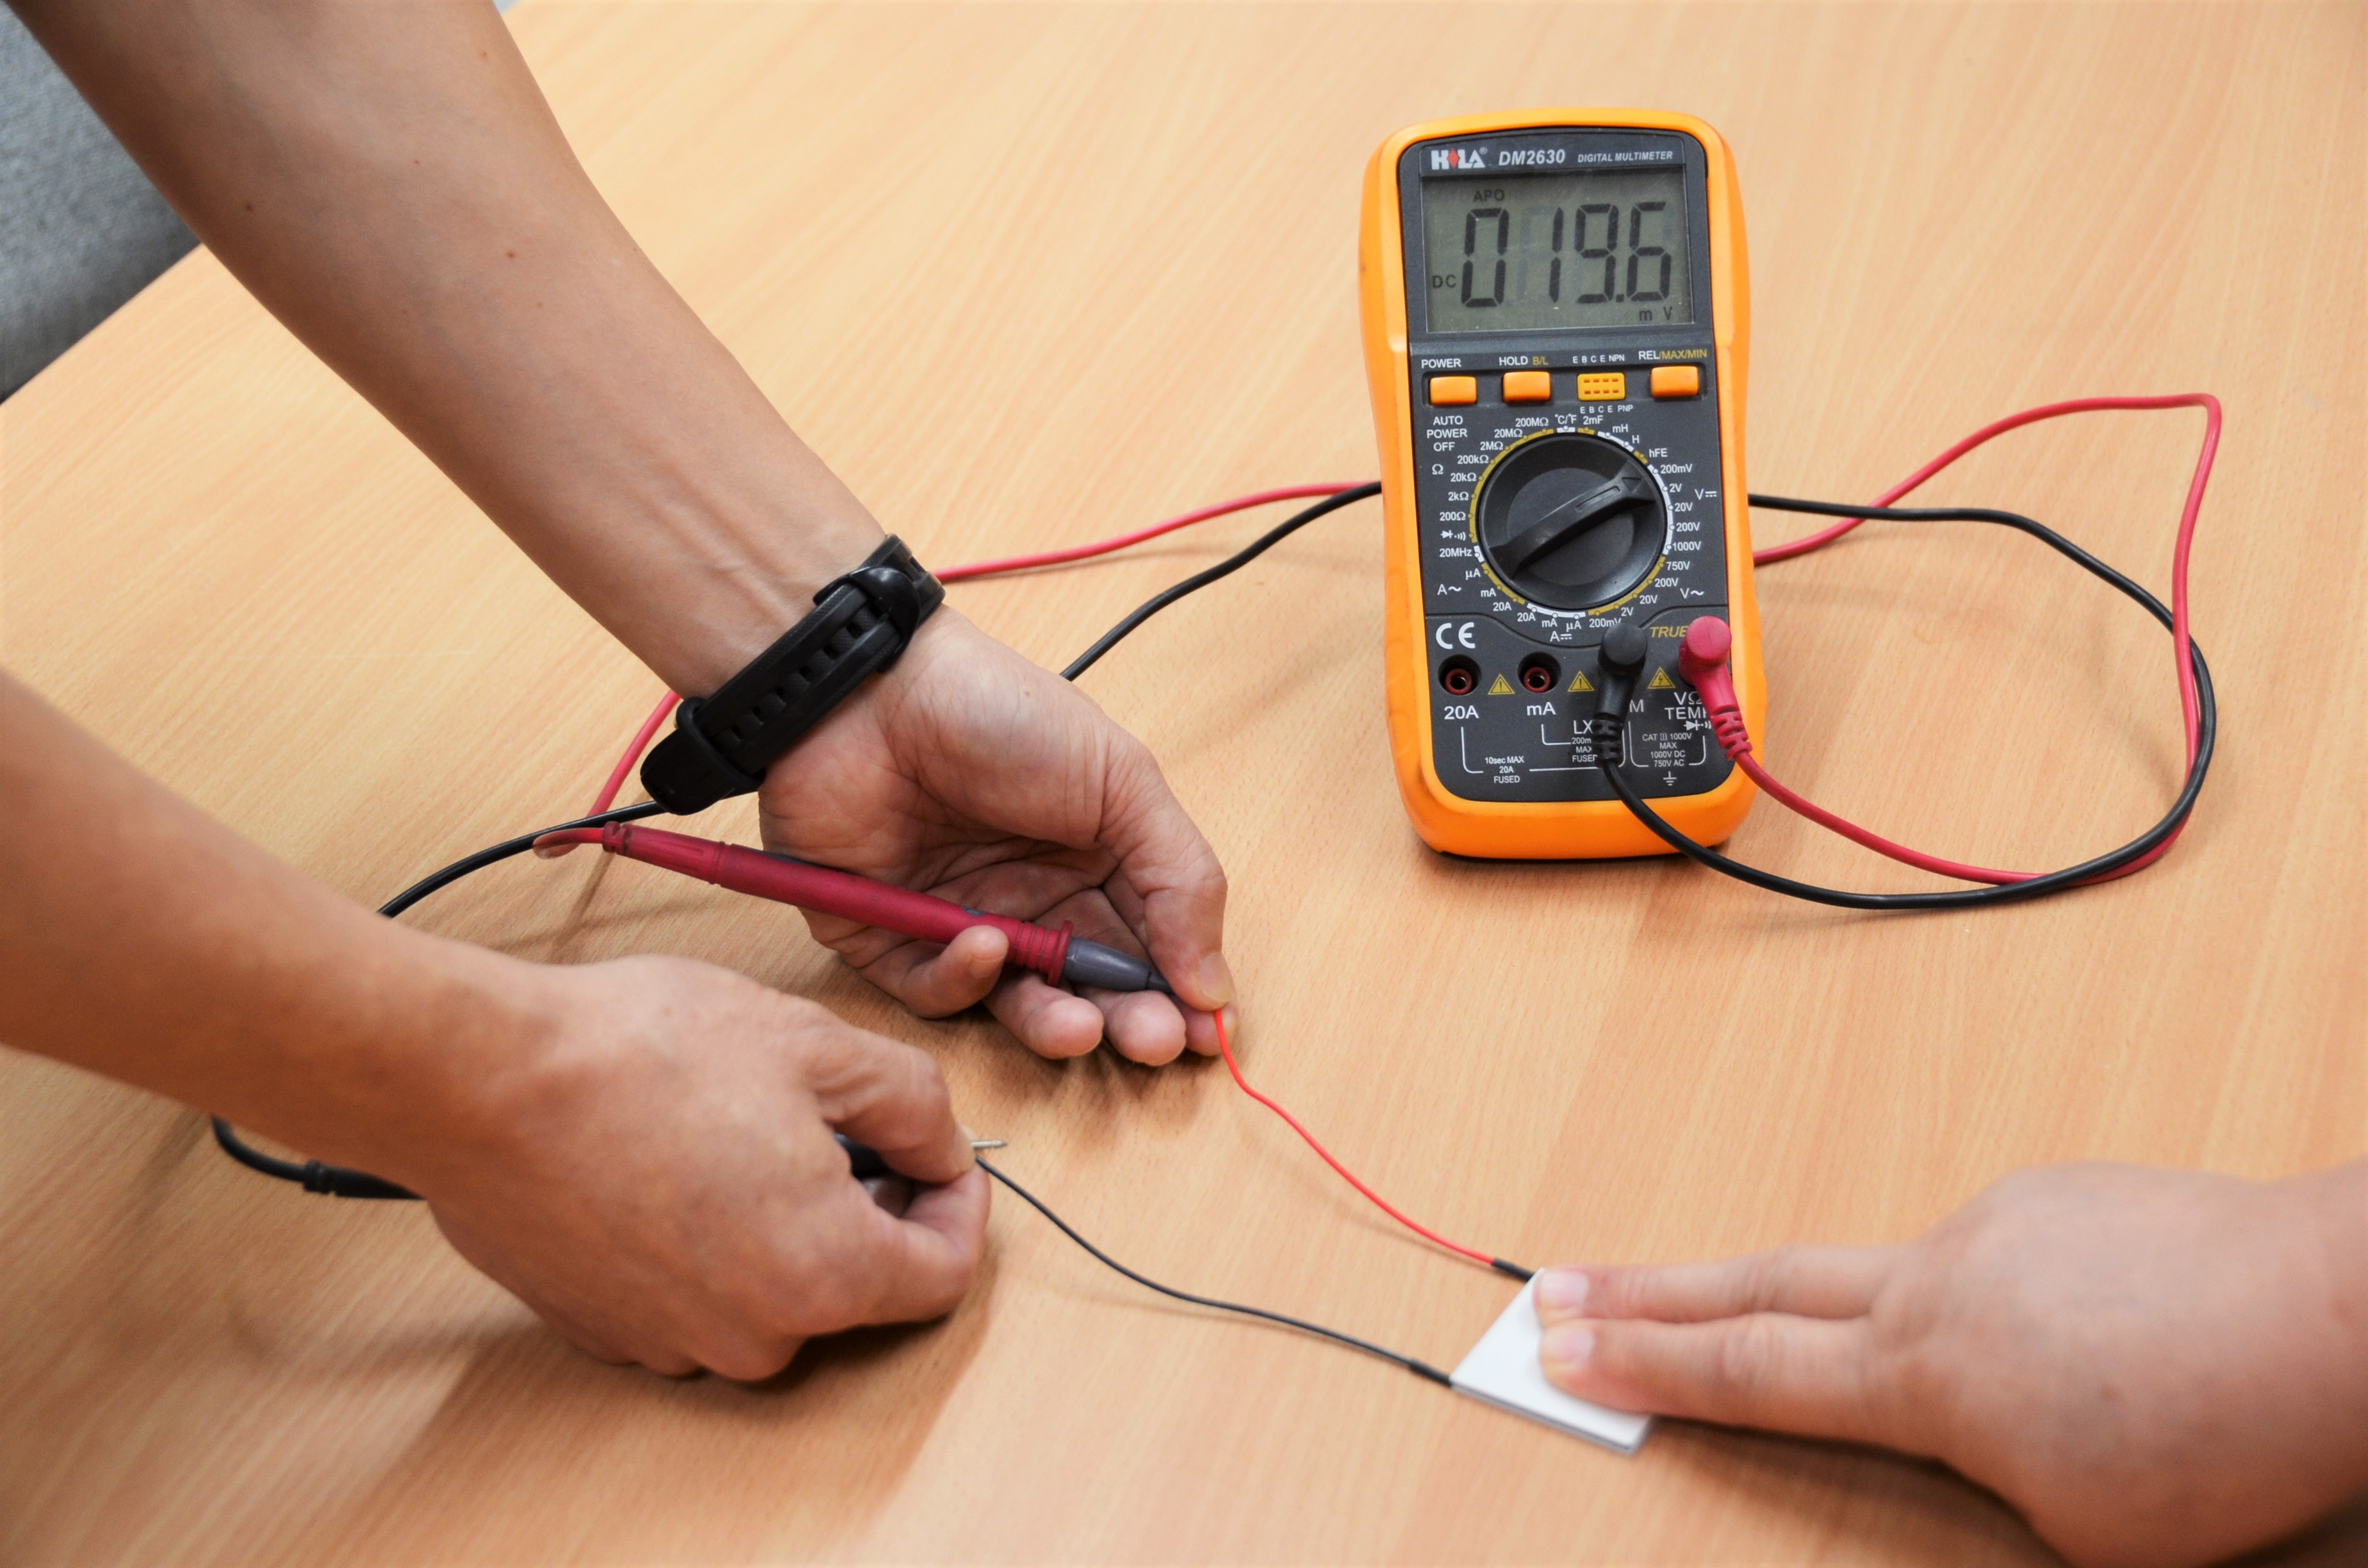 熱電模組發電：以手指和桌面間的溫度差產生電力